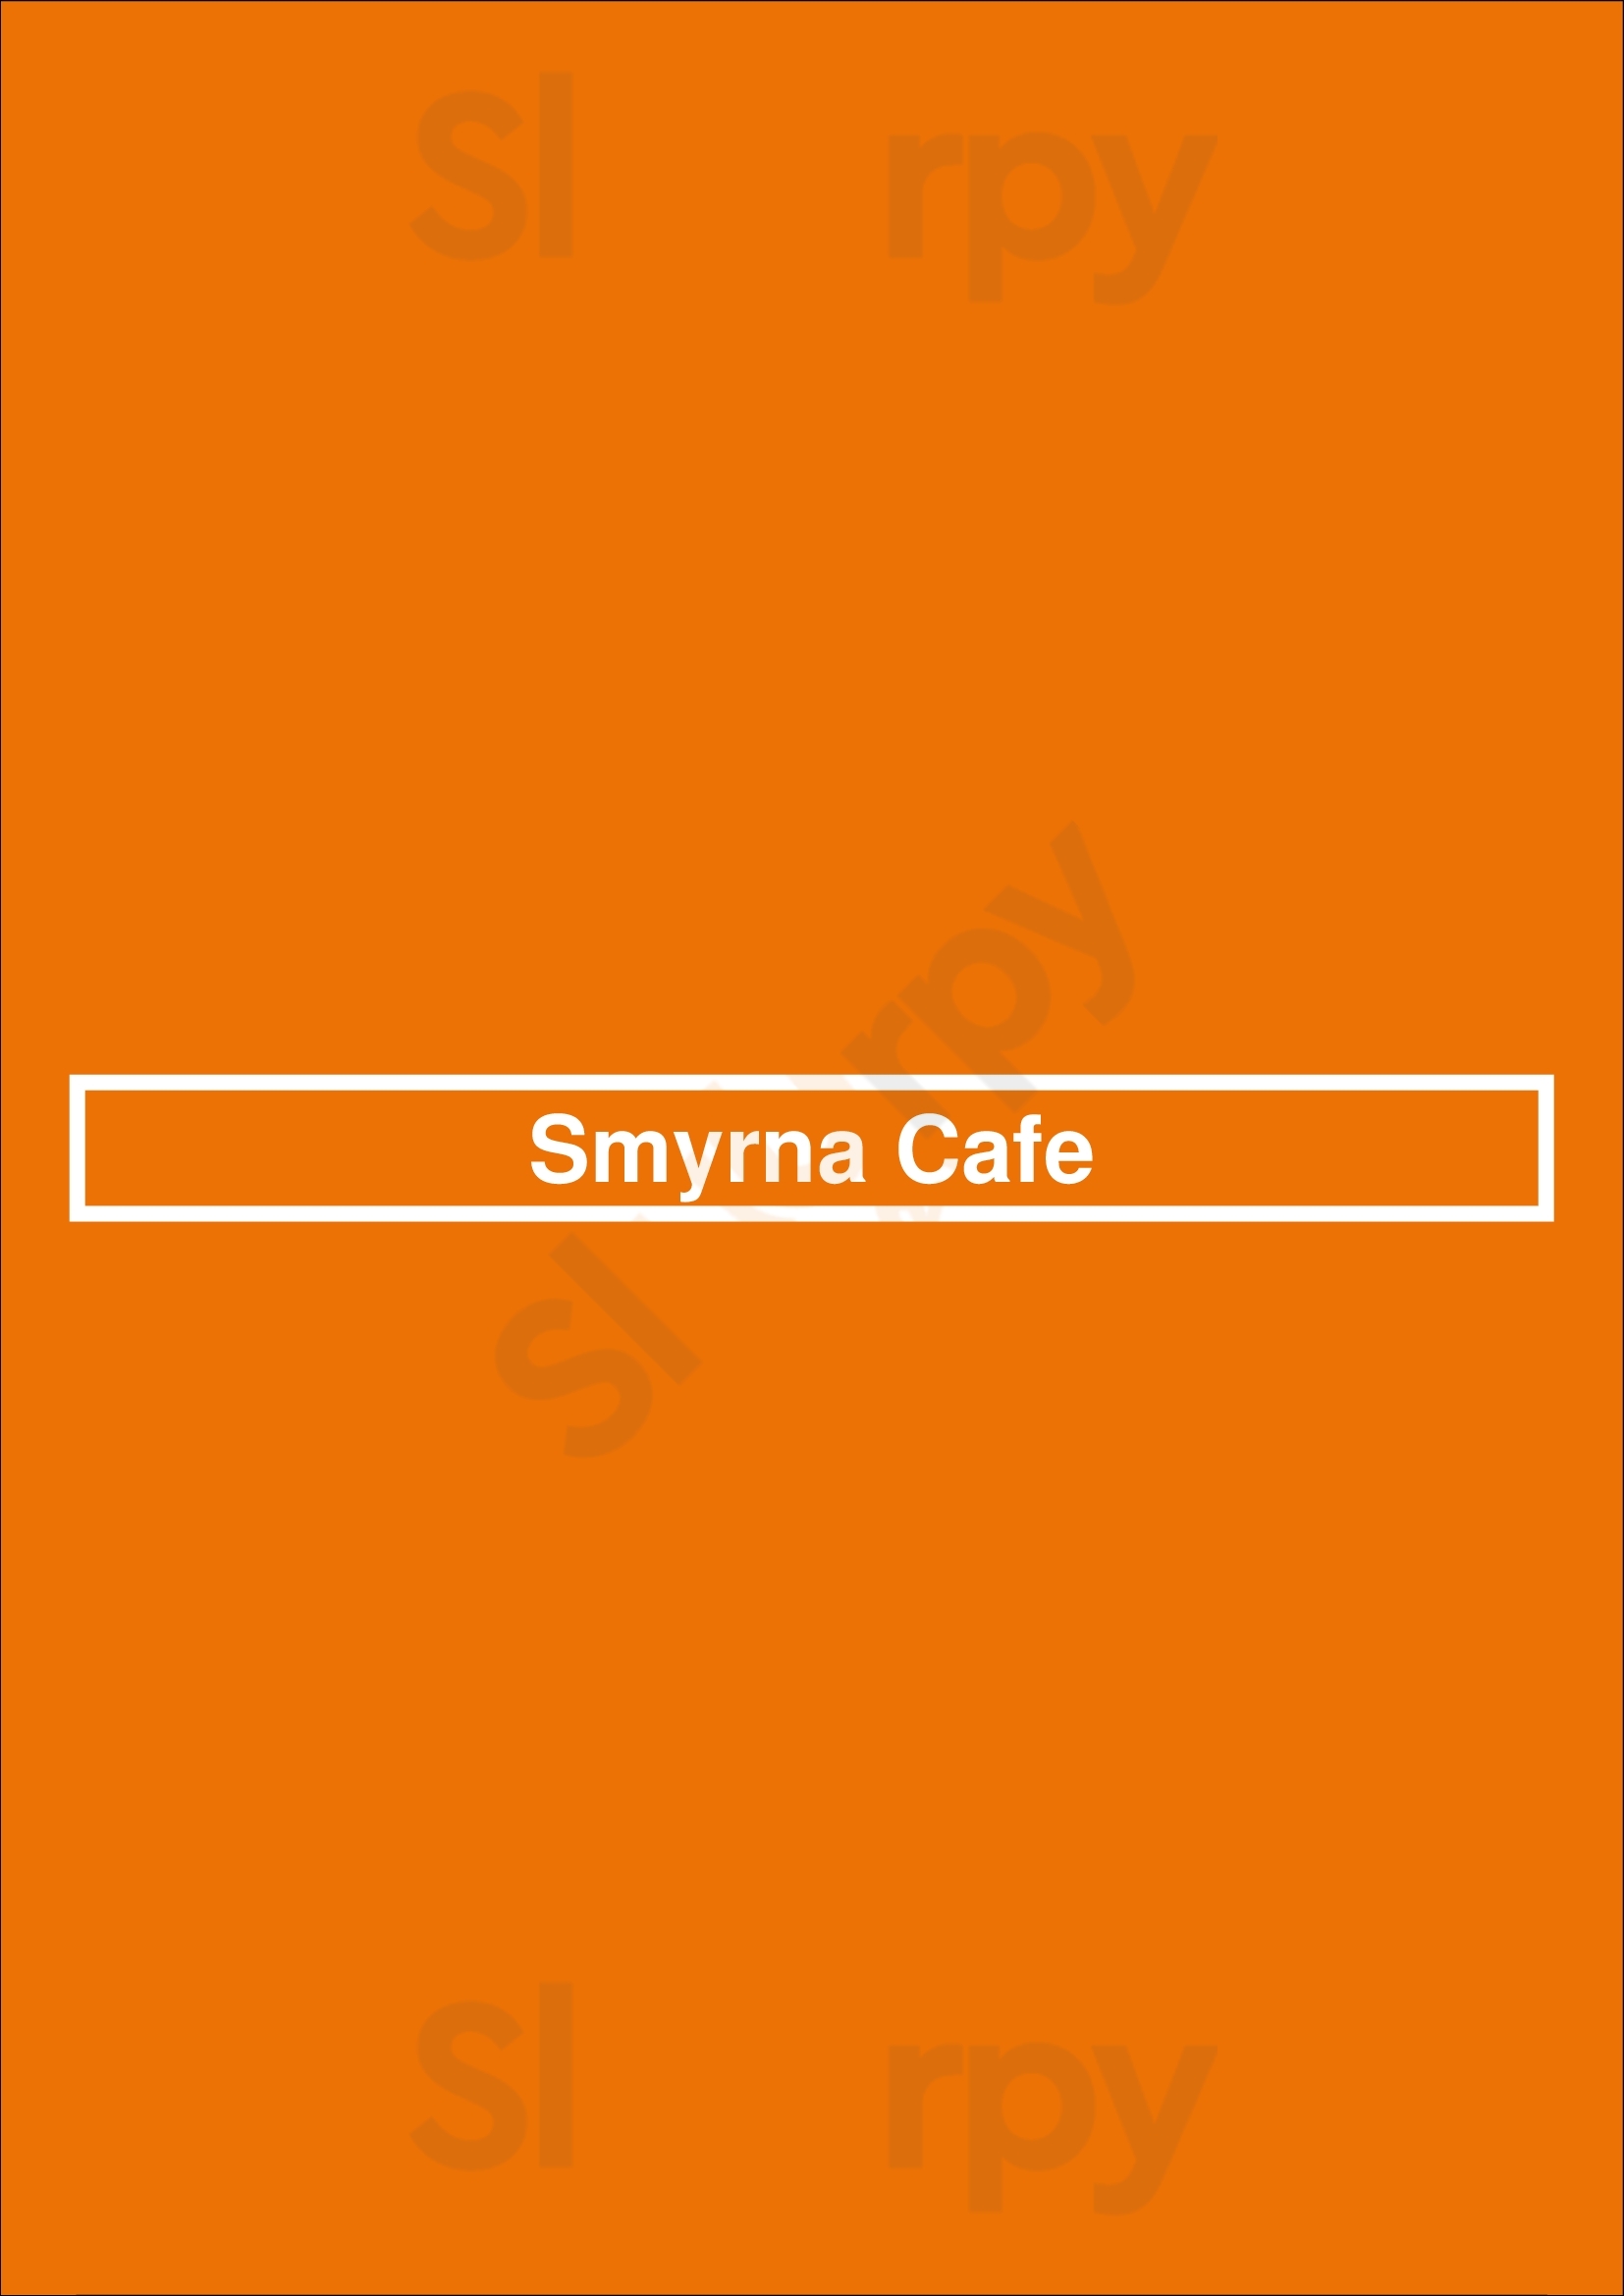 Smyrna Cafe Smyrna Menu - 1